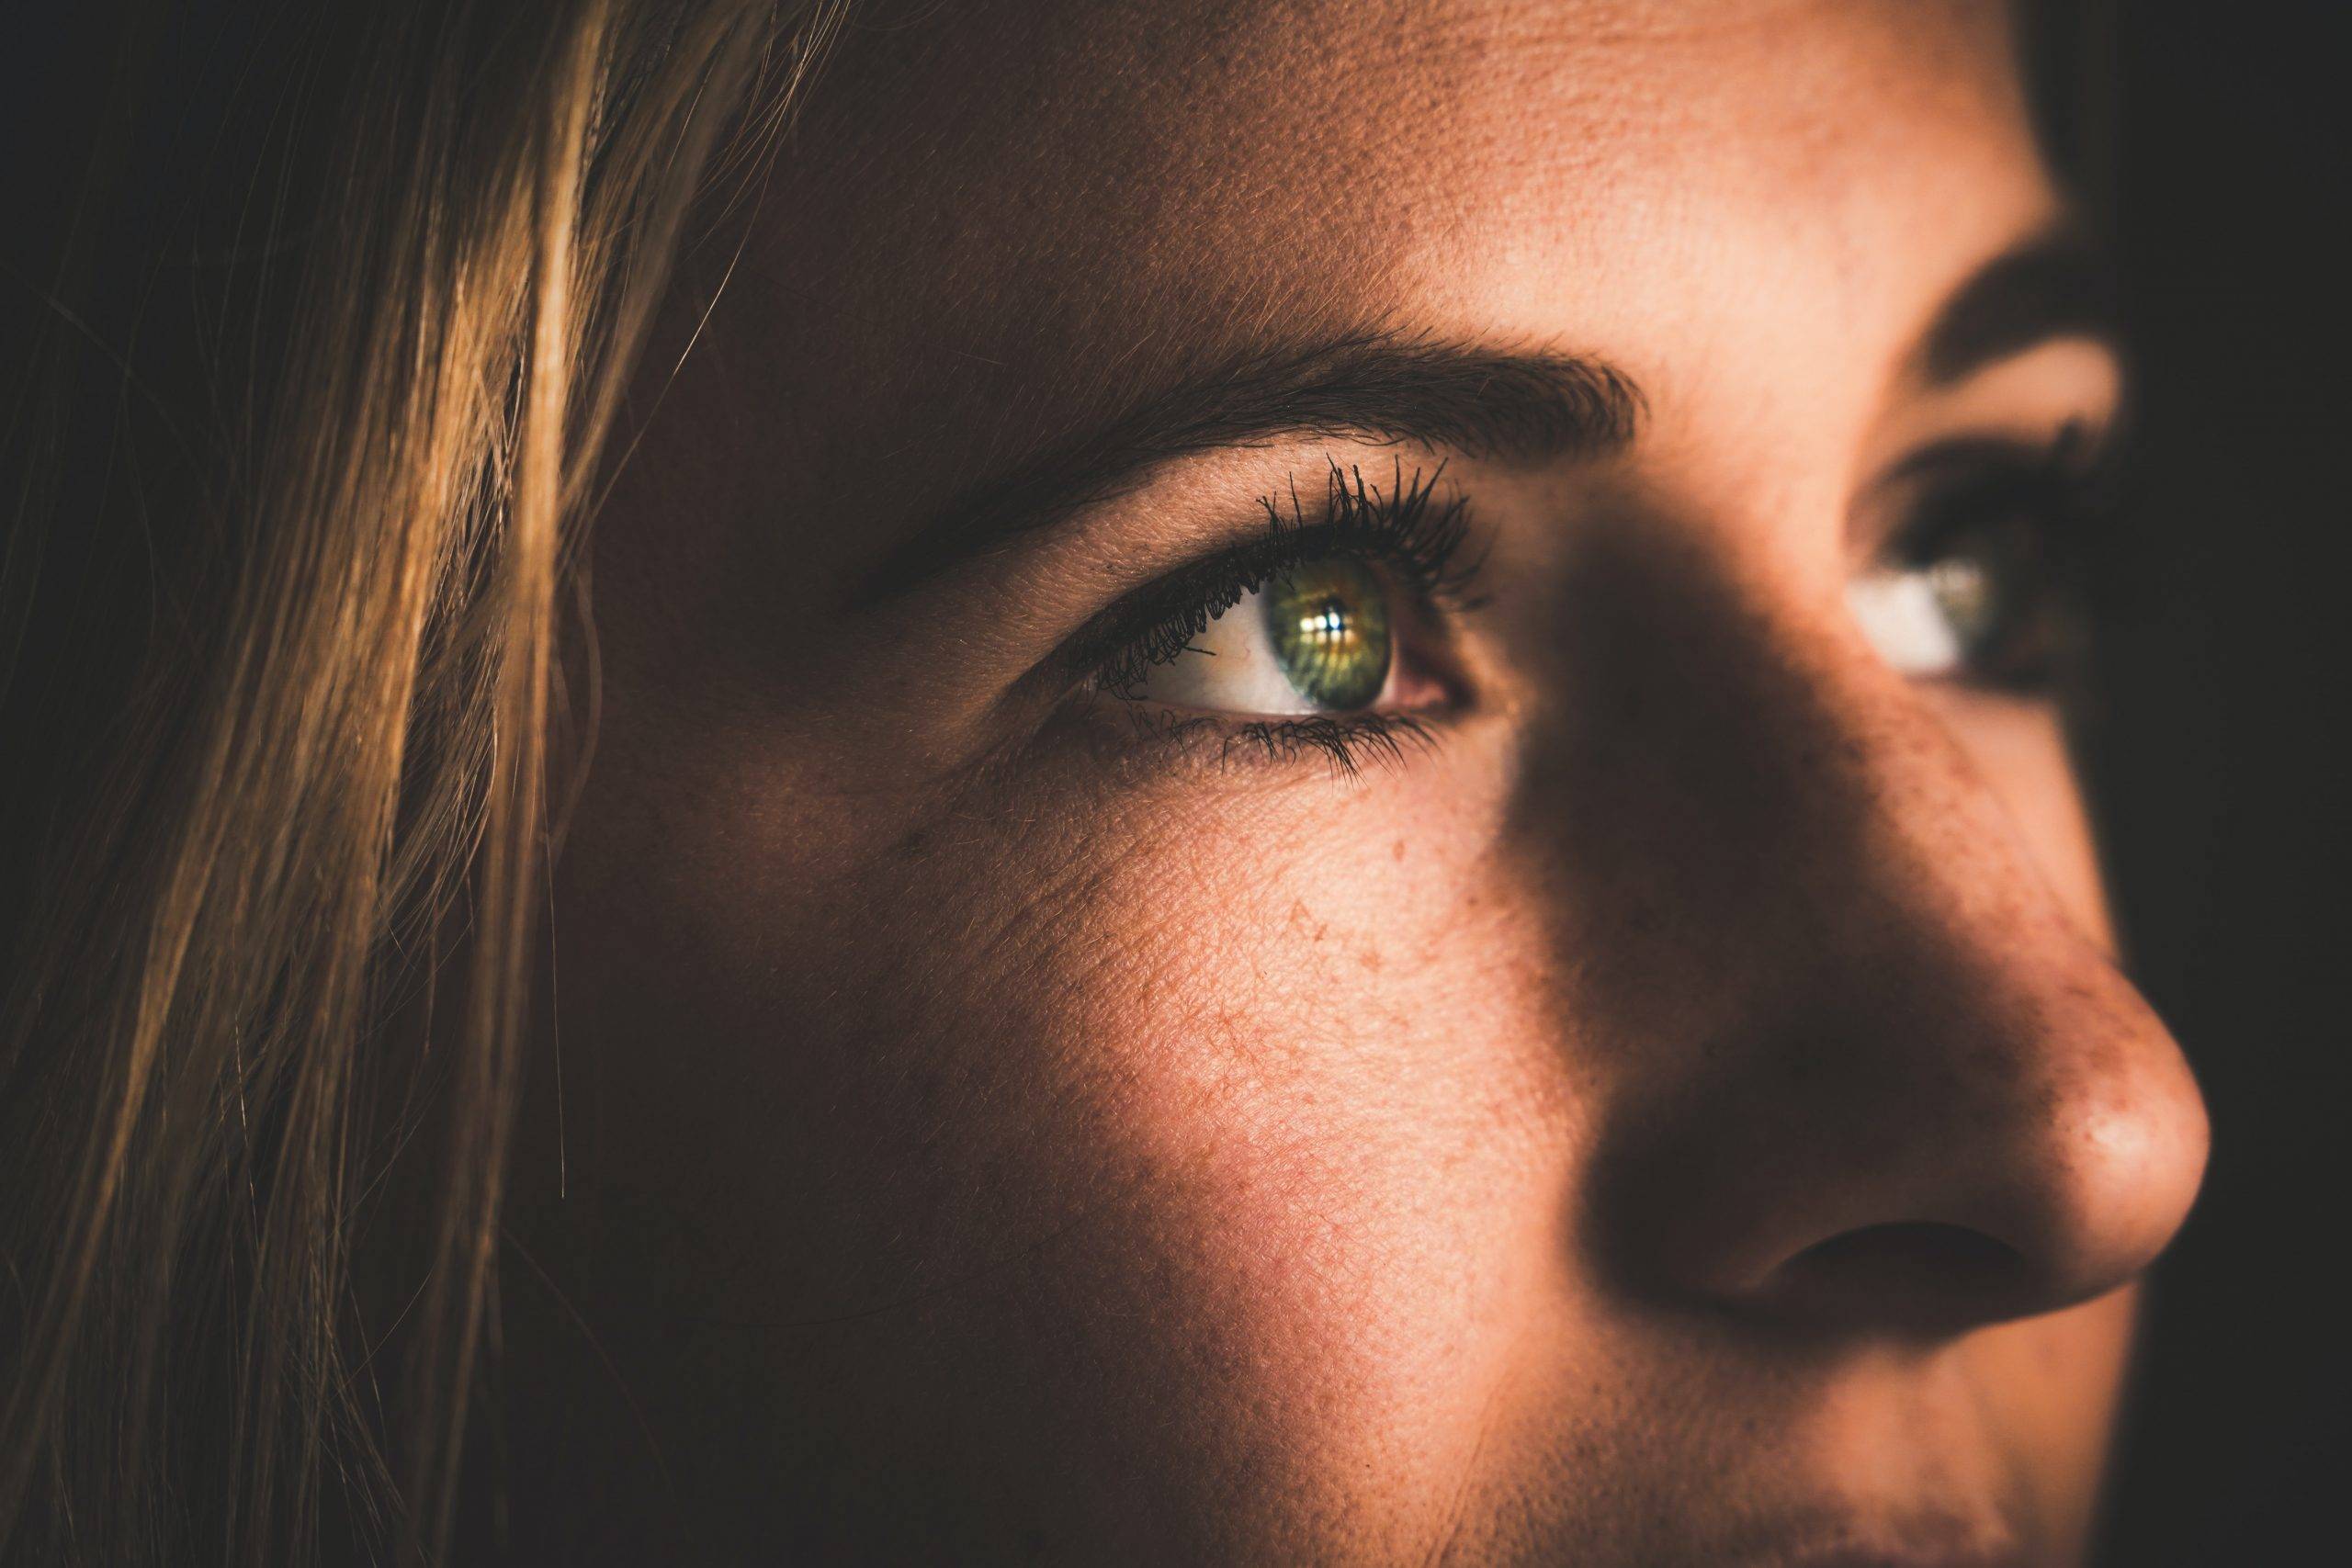 Sfaturi pentru femei: Ce machiaj pentru ochii verzi?